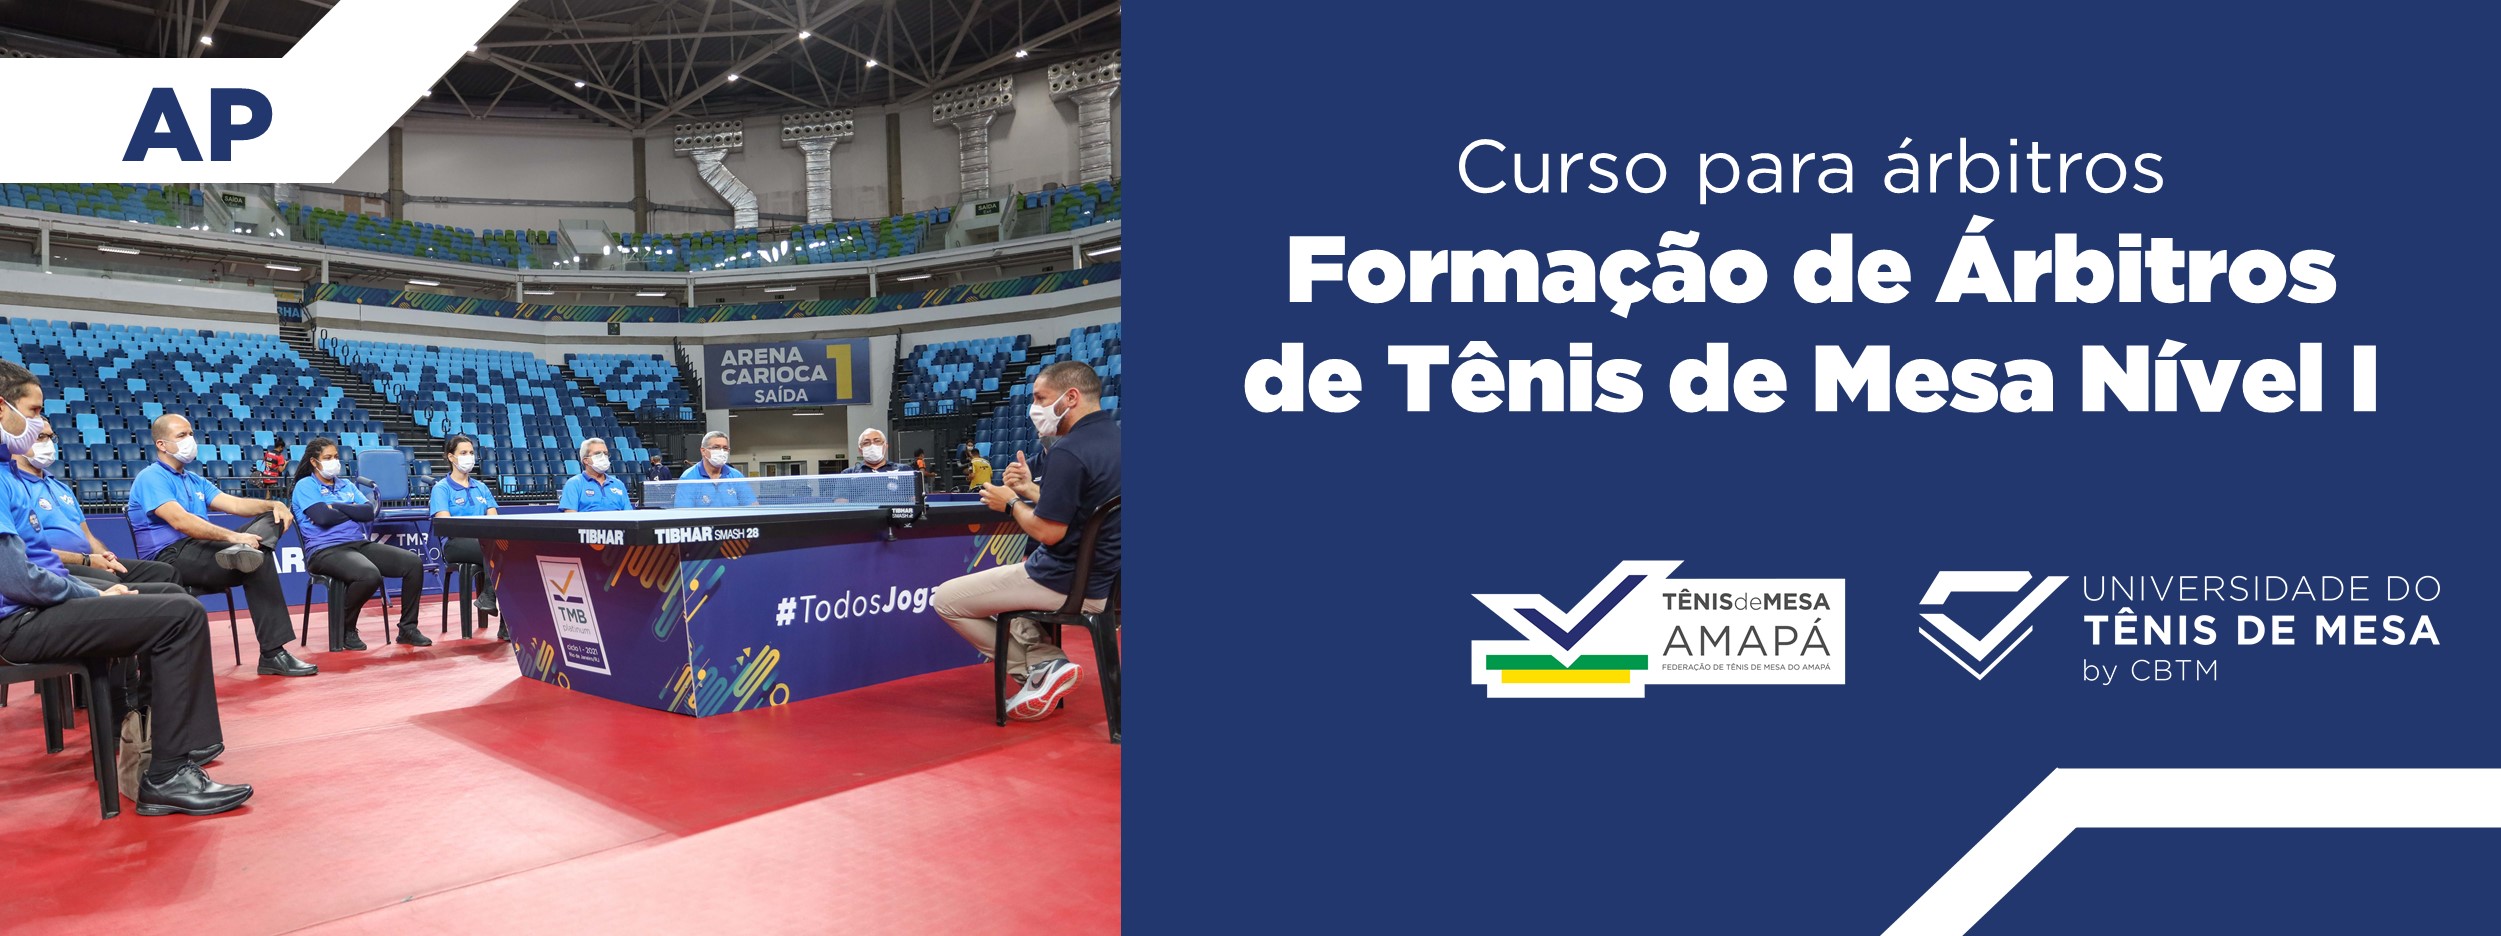 Banner - Formação de Árbitros de Tênis de Mesa  Nível I – Estadual - Federação de Tênis de Mesa do Amapá